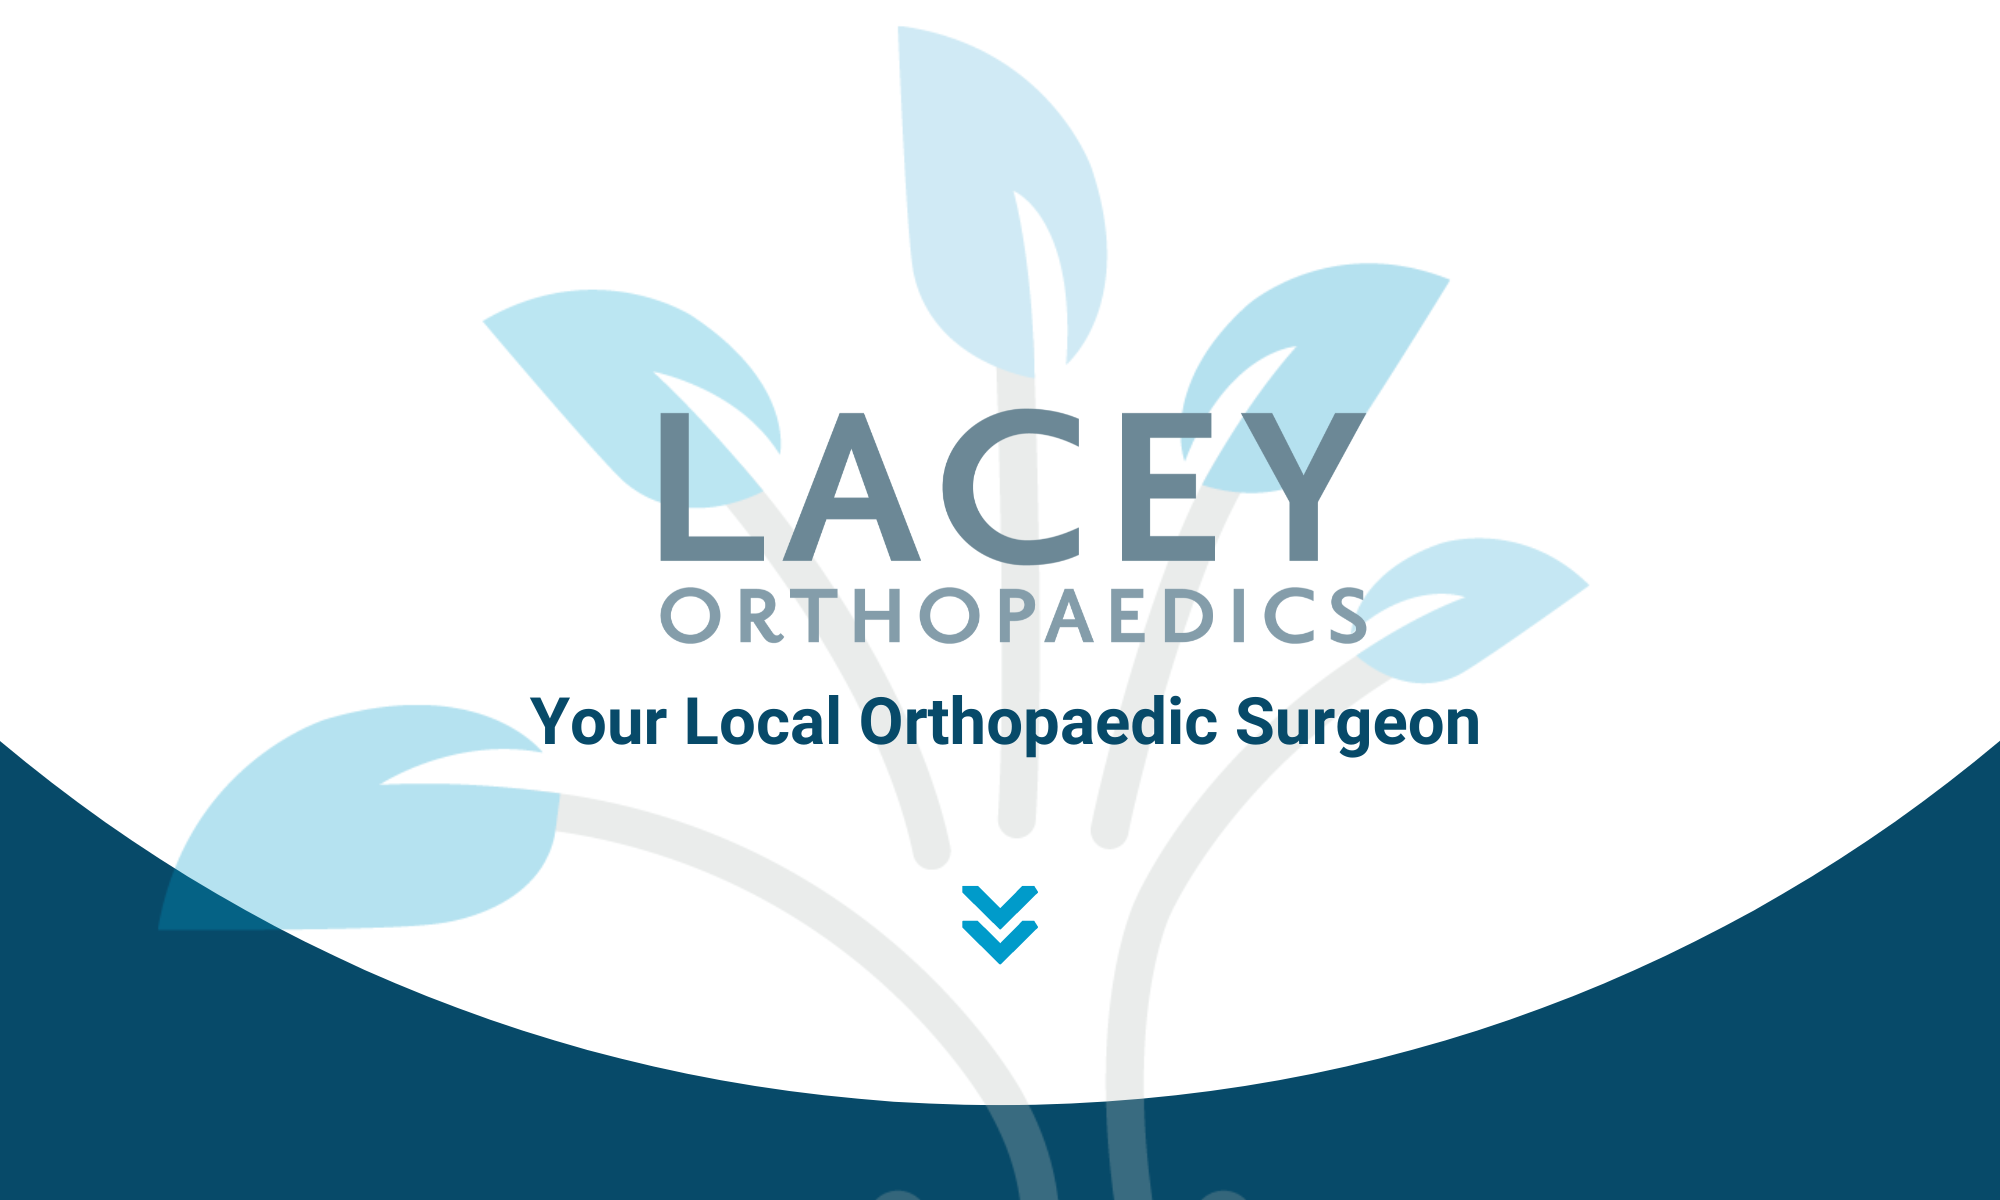 Lacey Orthopaedics